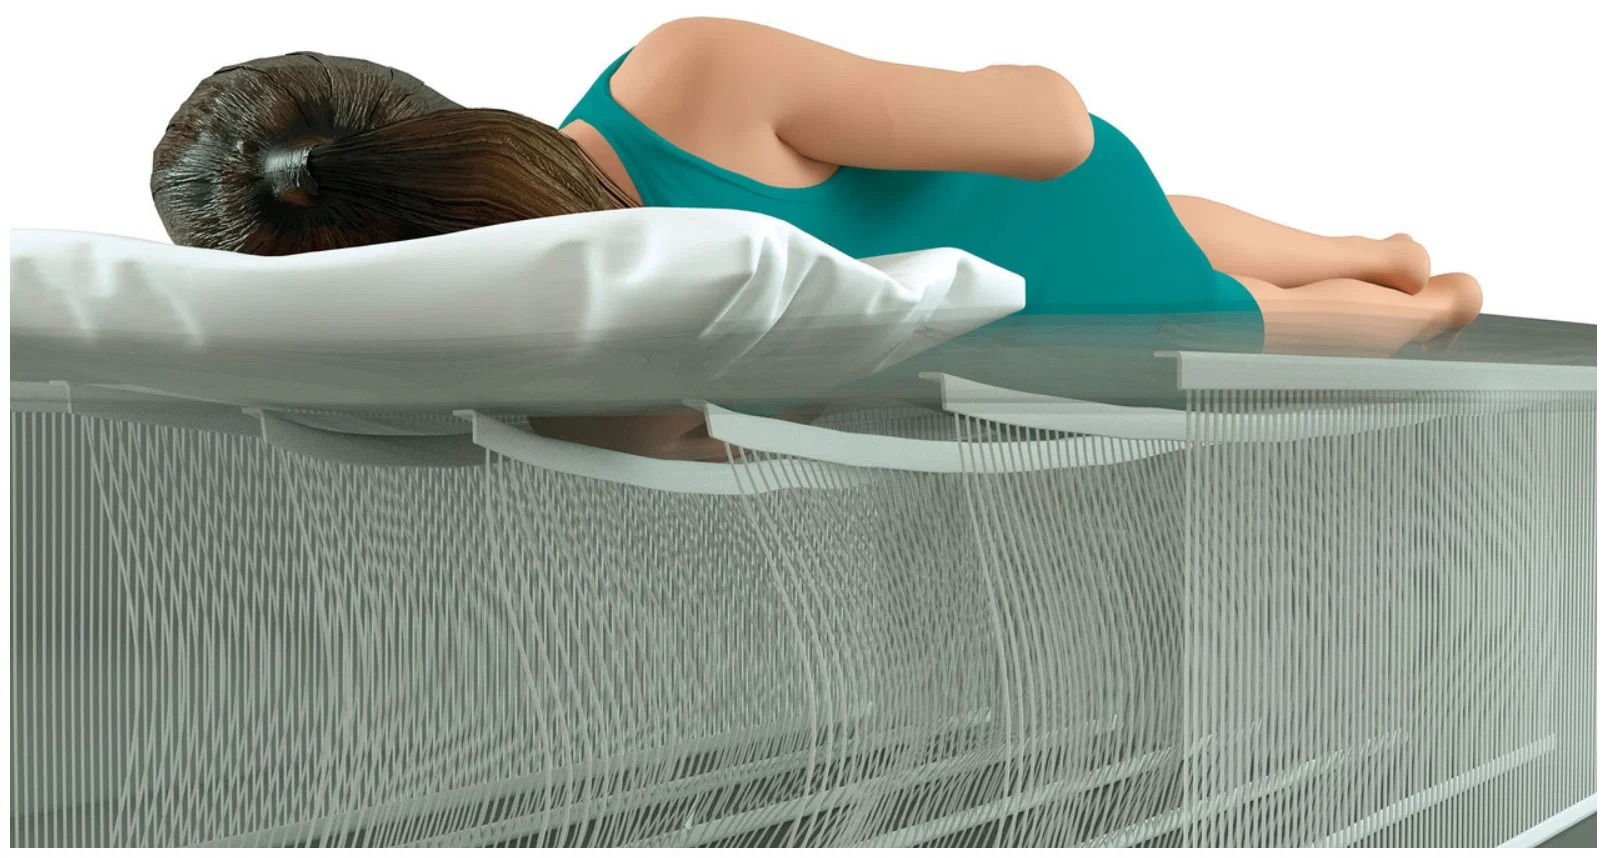 Надувная кровать intex fiber tech